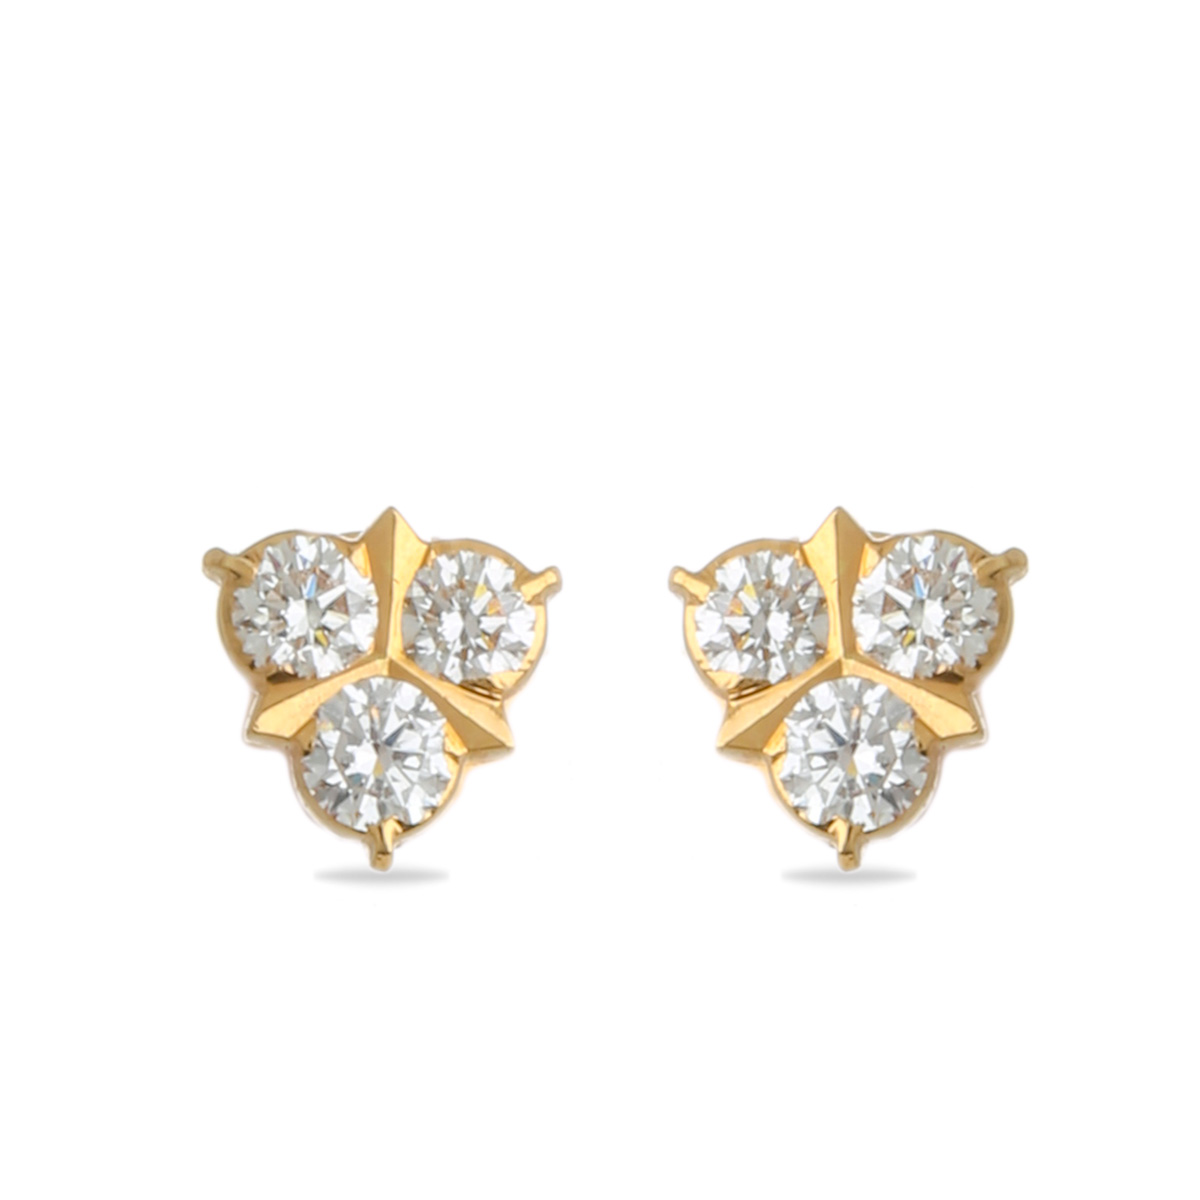 Spunky Diamond Earrings